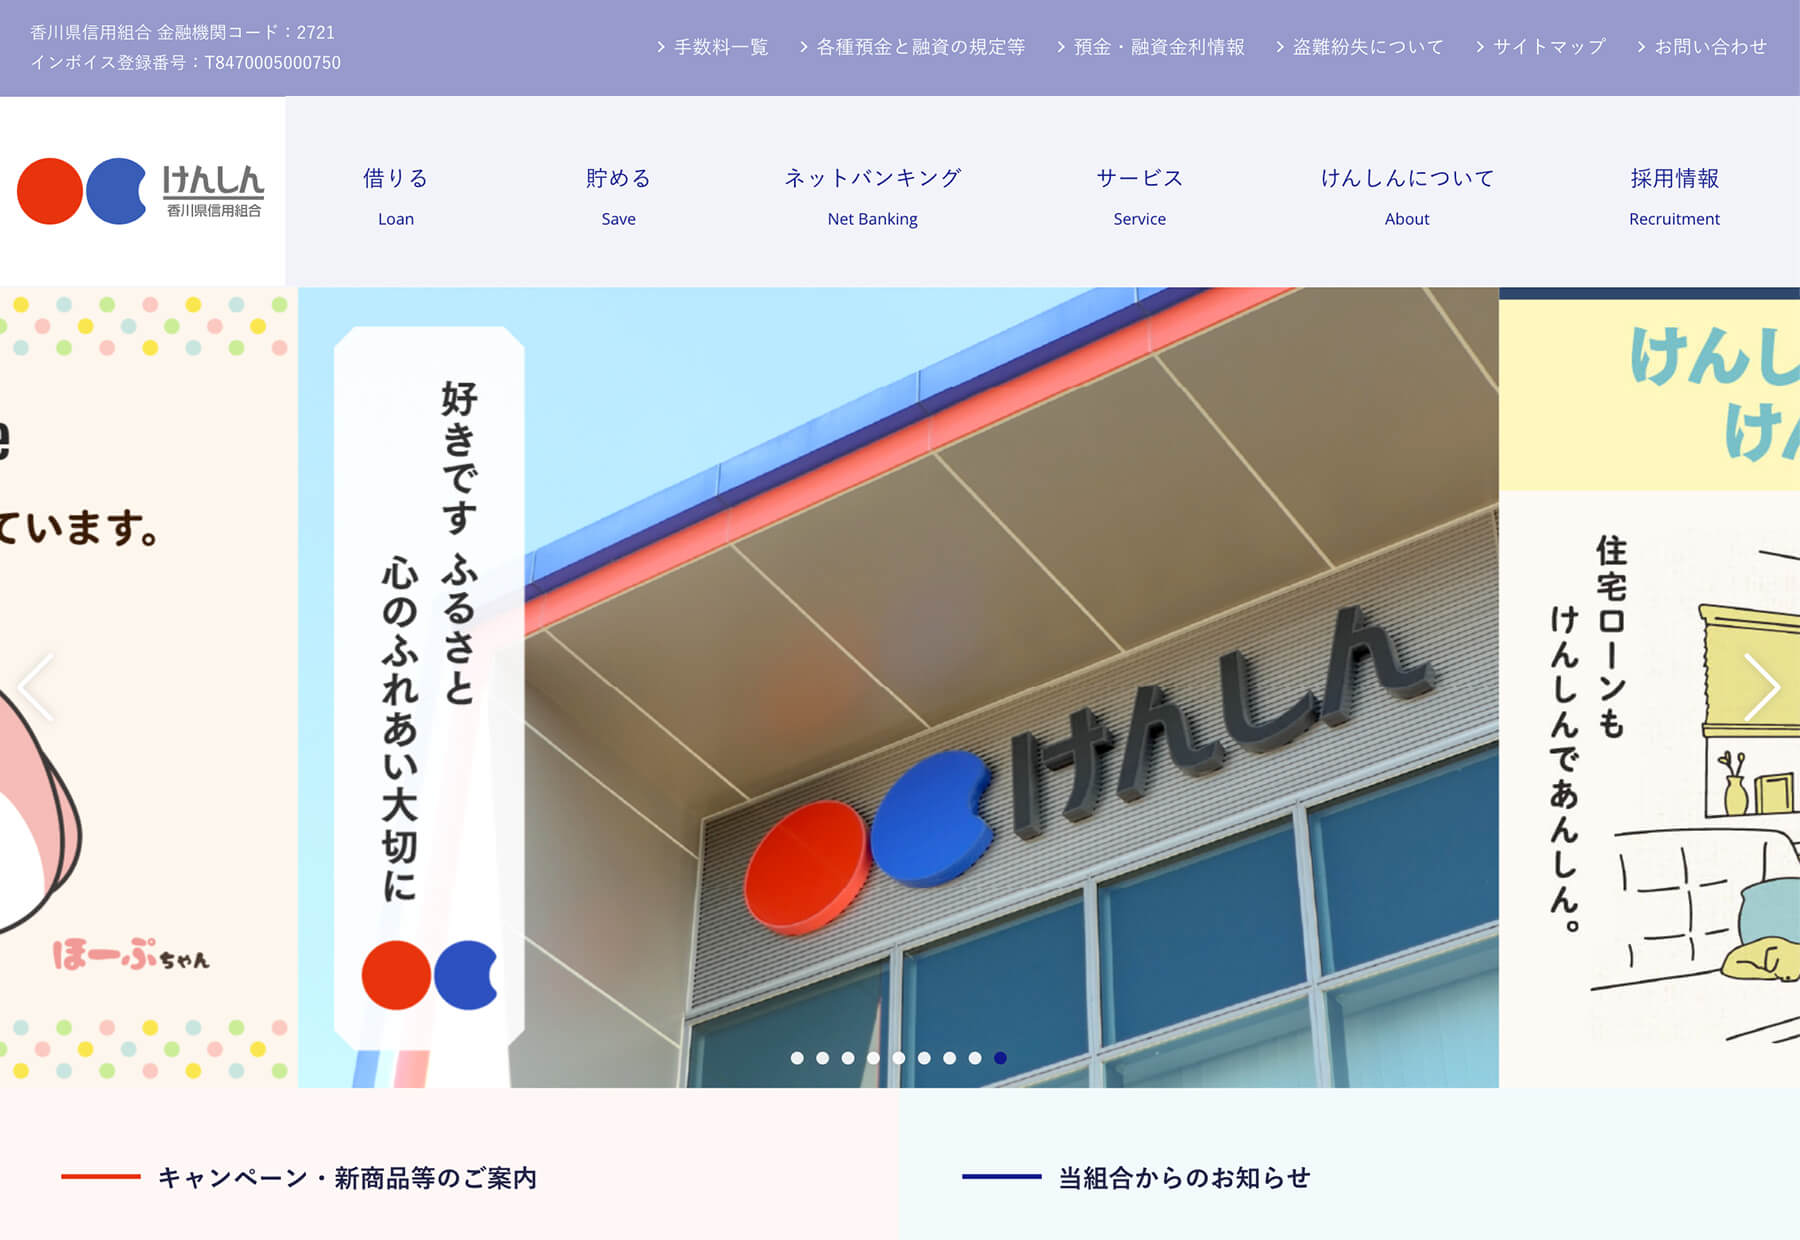 香川県信用組合様 コーポレートサイトの制作